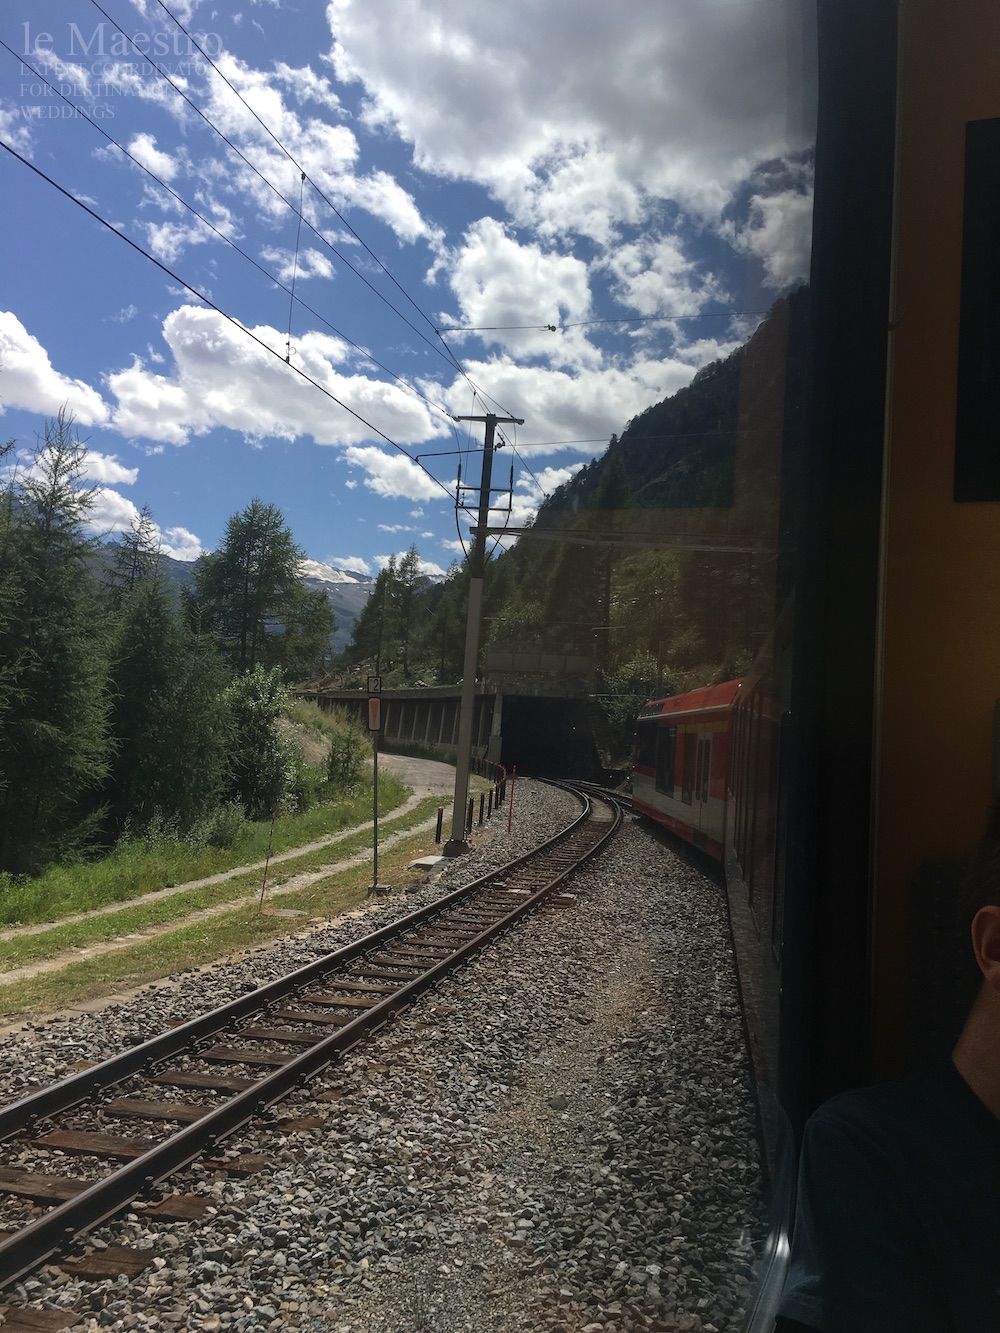 ヨーロッパ鉄道の旅 チケット購入編 スイスの車窓